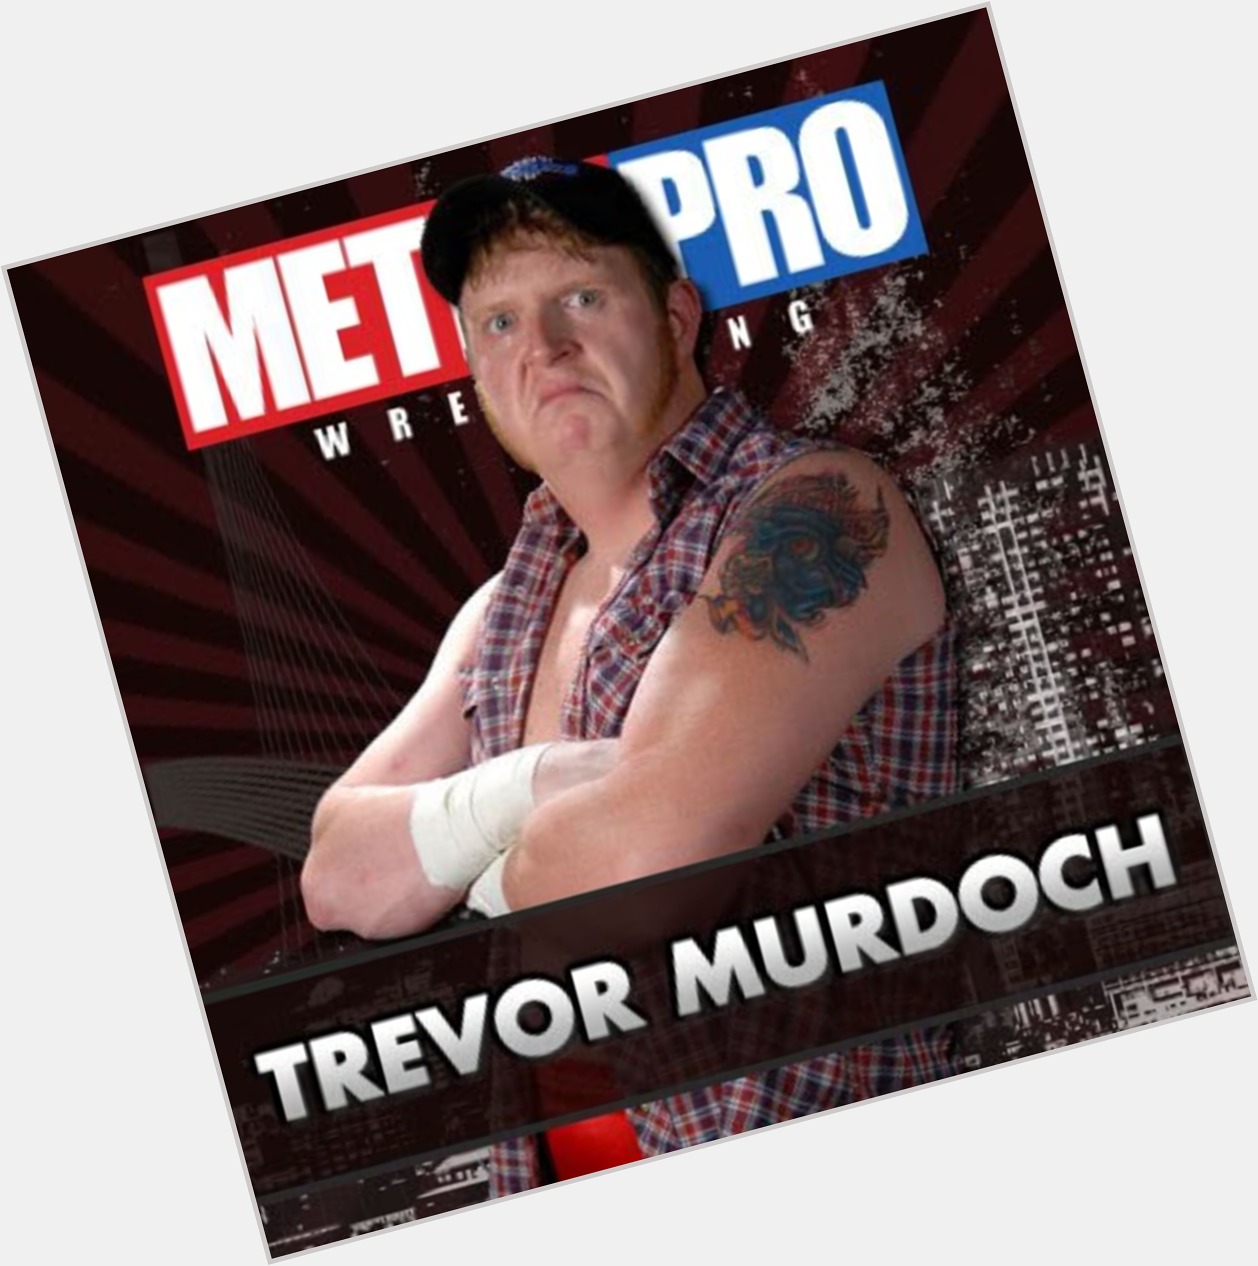 Trevor Murdoch new pic 1